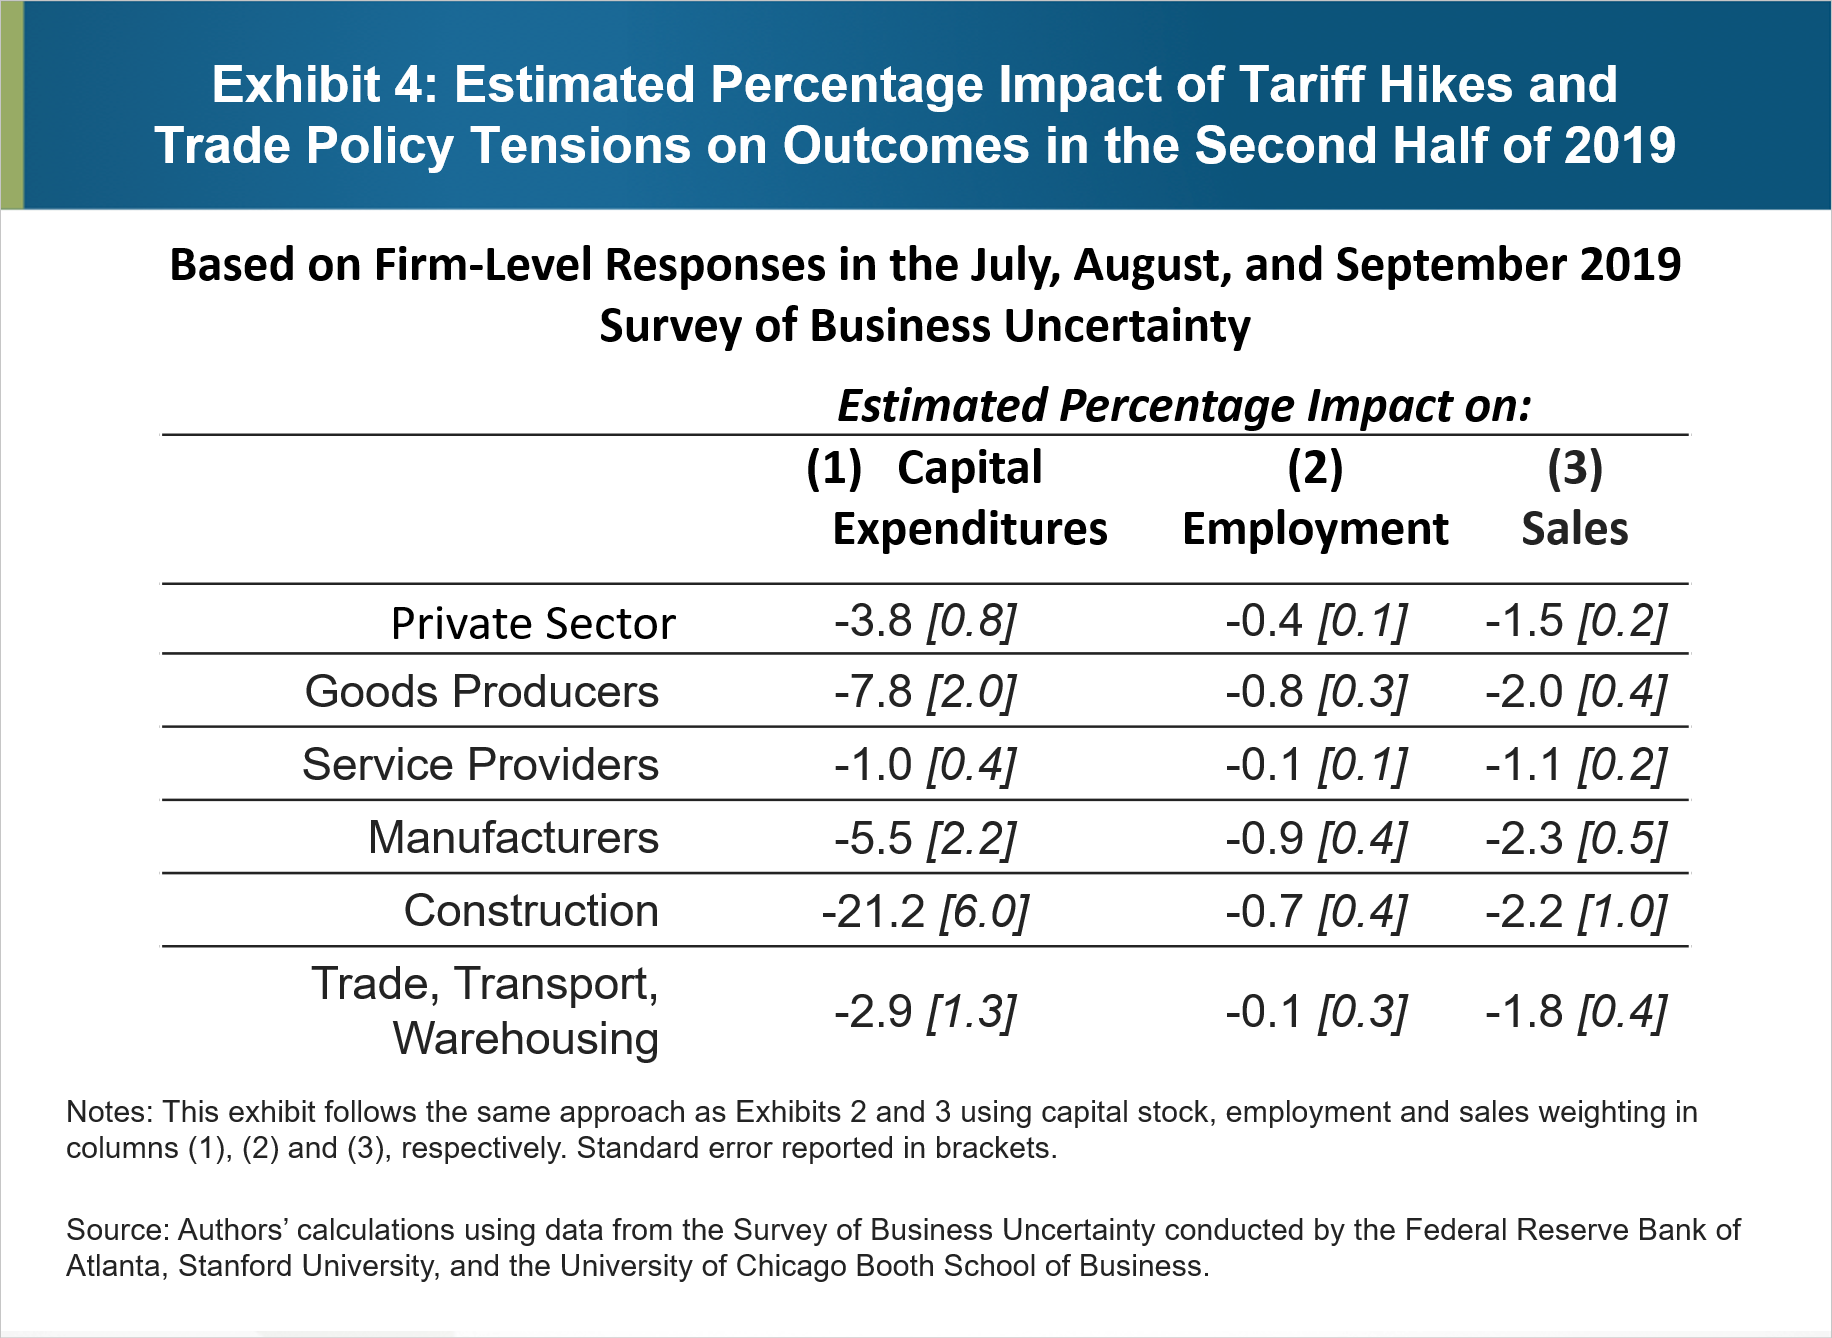 Rysunek 4: Szacowany procentowy wpływ podwyżek taryf i napięć w polityce handlowej na wyniki w drugiej połowie 2019 r.